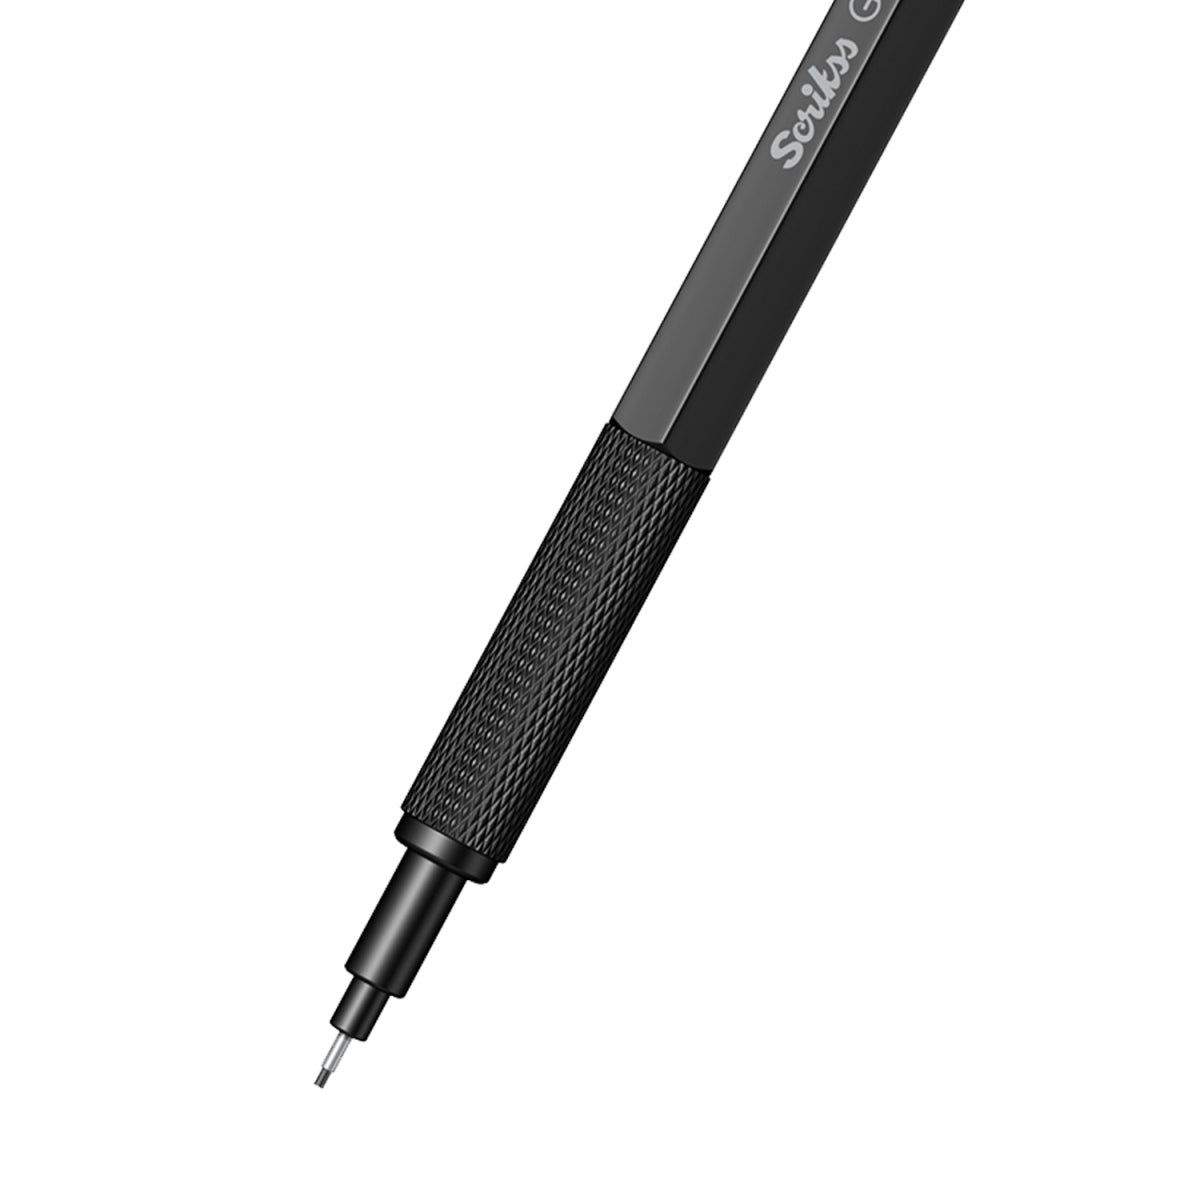 Scrikss Office Graph-X Matt Black Brass Plated Mechanical Pencil with 0.5mm Lead of Grade 2B, Mini Interchangeable Eraser, Push Mechanism, Brass Plated Swing Grip.